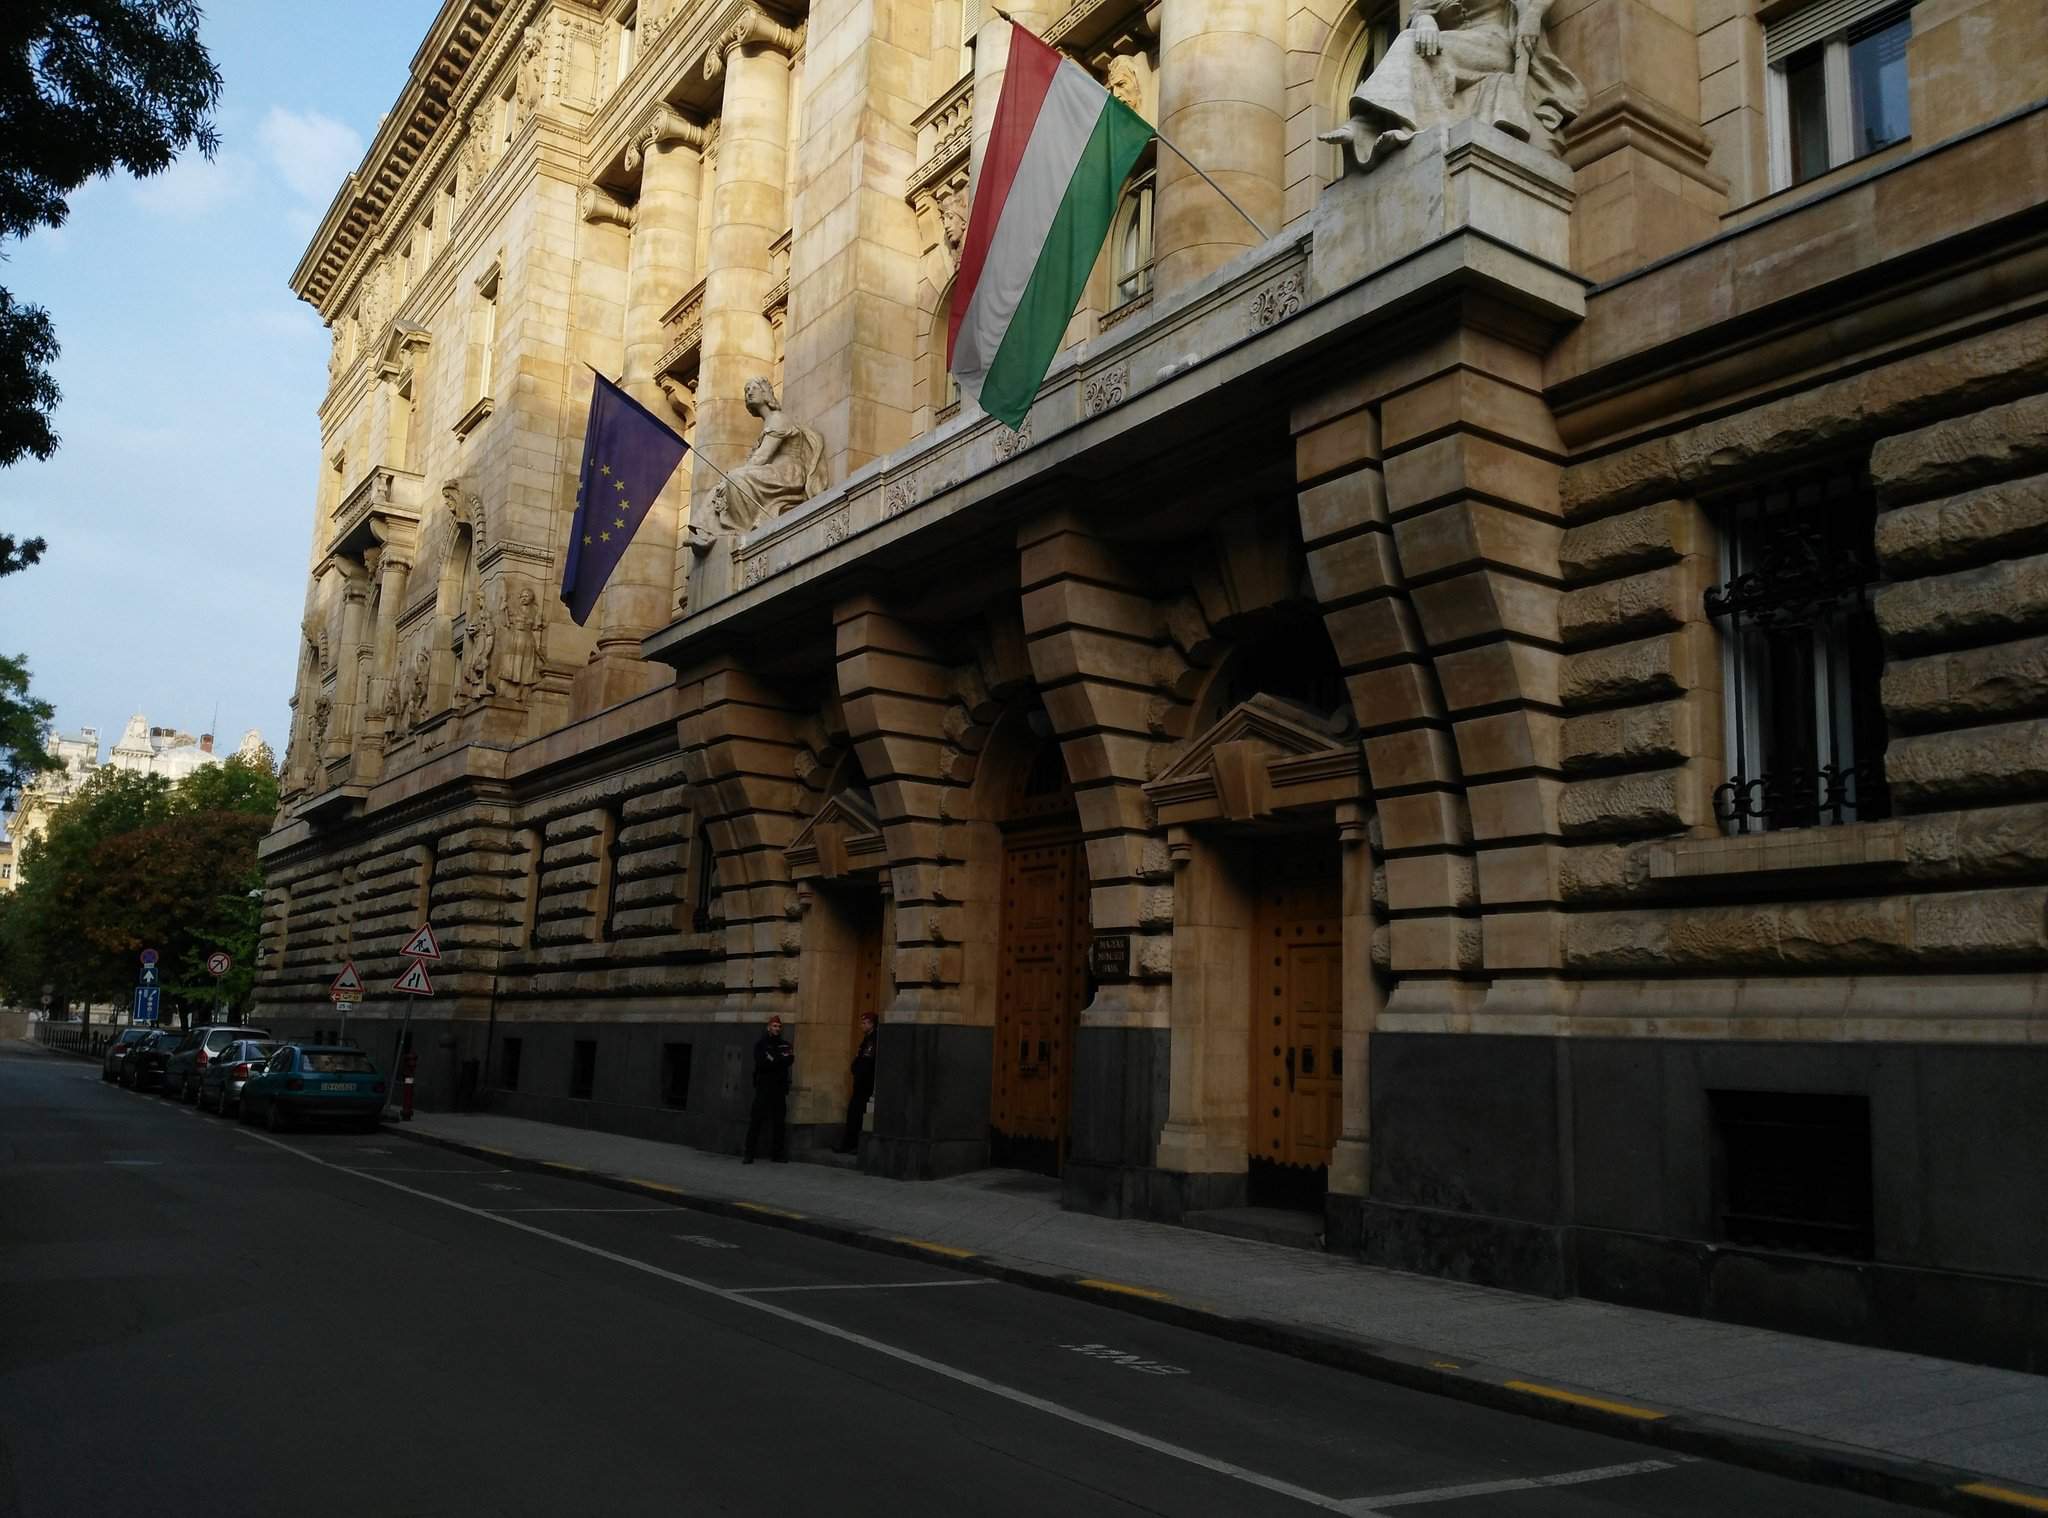 नेशनल बैंक ऑफ़ हंगरी